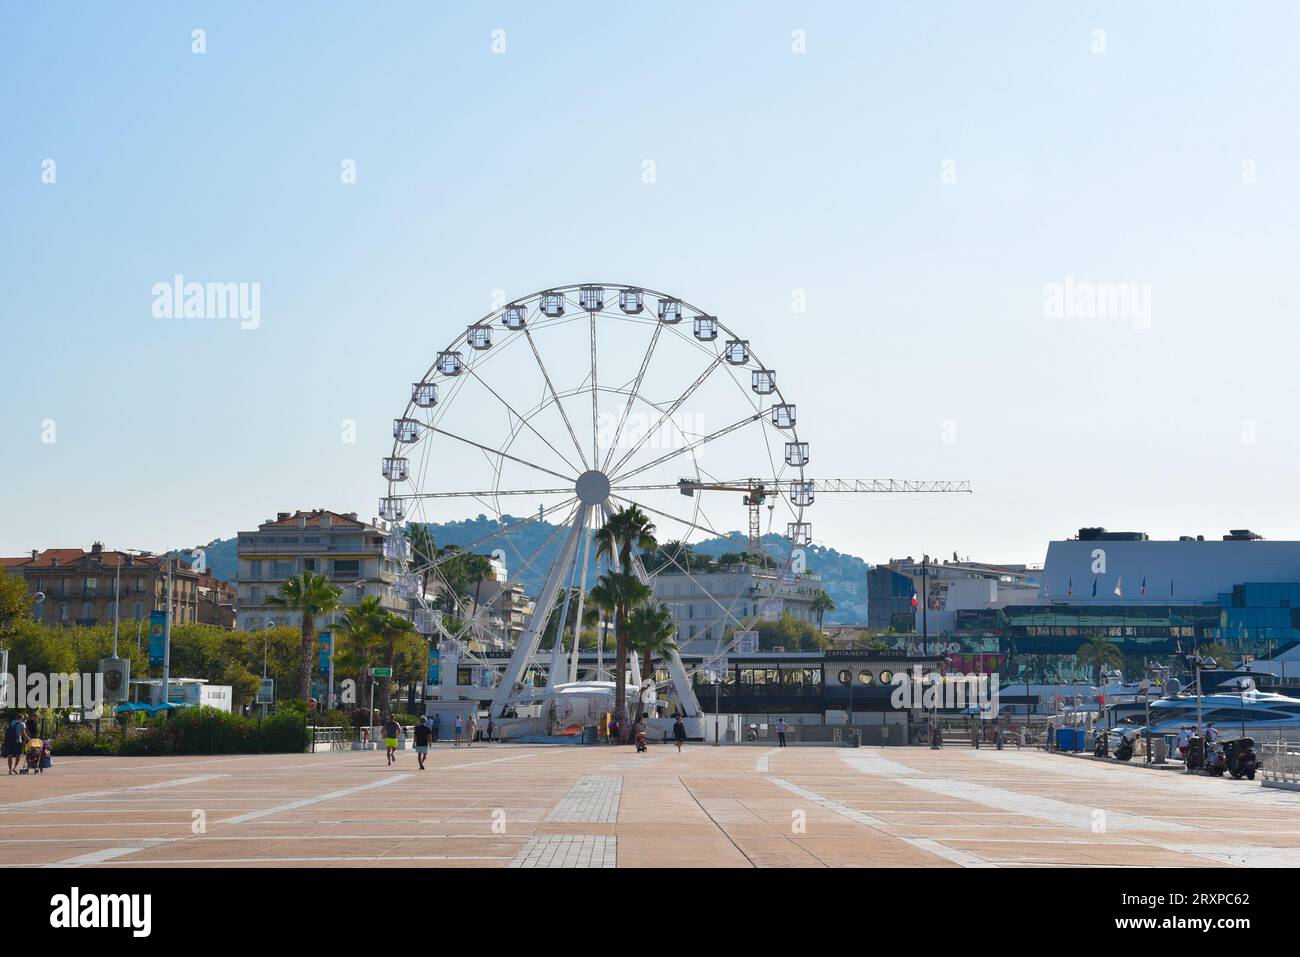 Francia, Cannes, una località turistica sulla Costa Azzurra, è famosa per il suo festival internazionale del cinema. Foto Stock